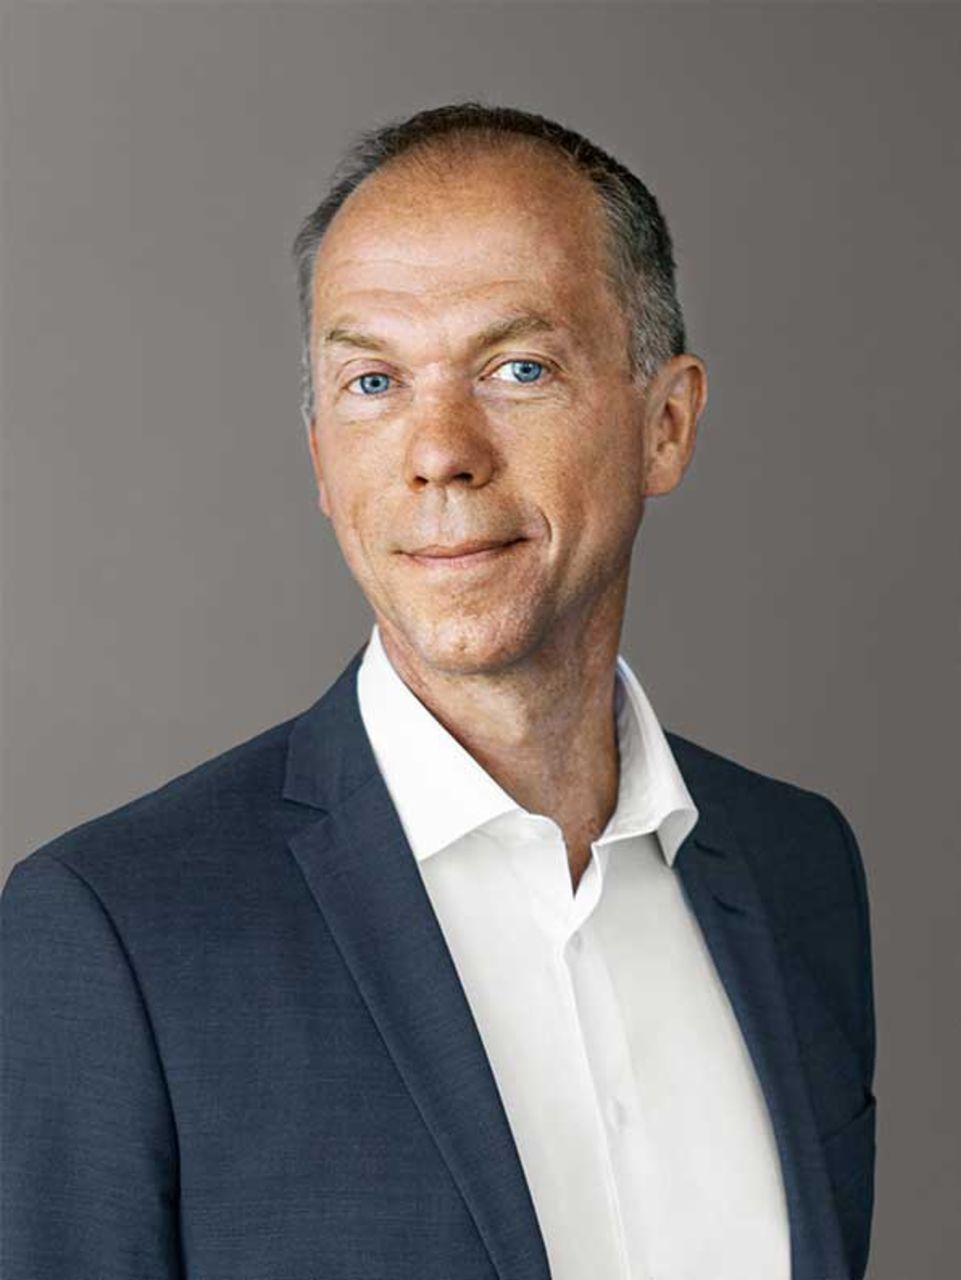 Portrait von Mathias Carlbaum, Mitglied des Vorstands der TRATON SE, Chief Executive Officer und President von Navistar International Corporation